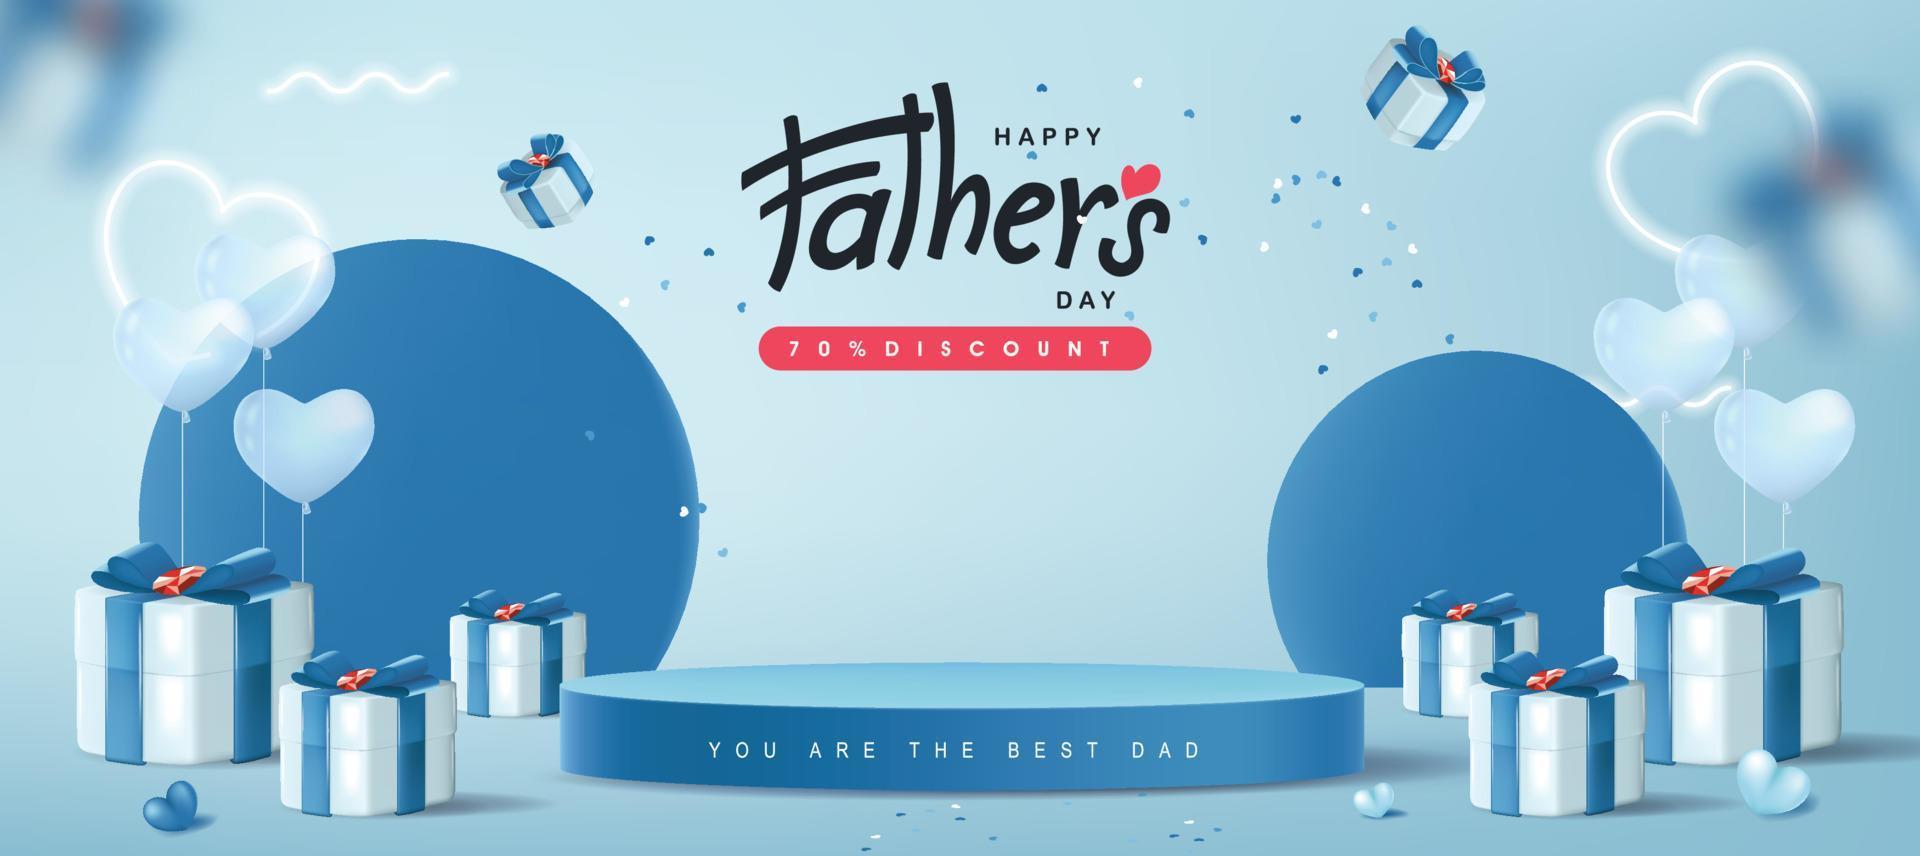 cartão de dia dos pais com forma cilíndrica de exibição de produto e caixa de presente para pai em fundo azul vetor